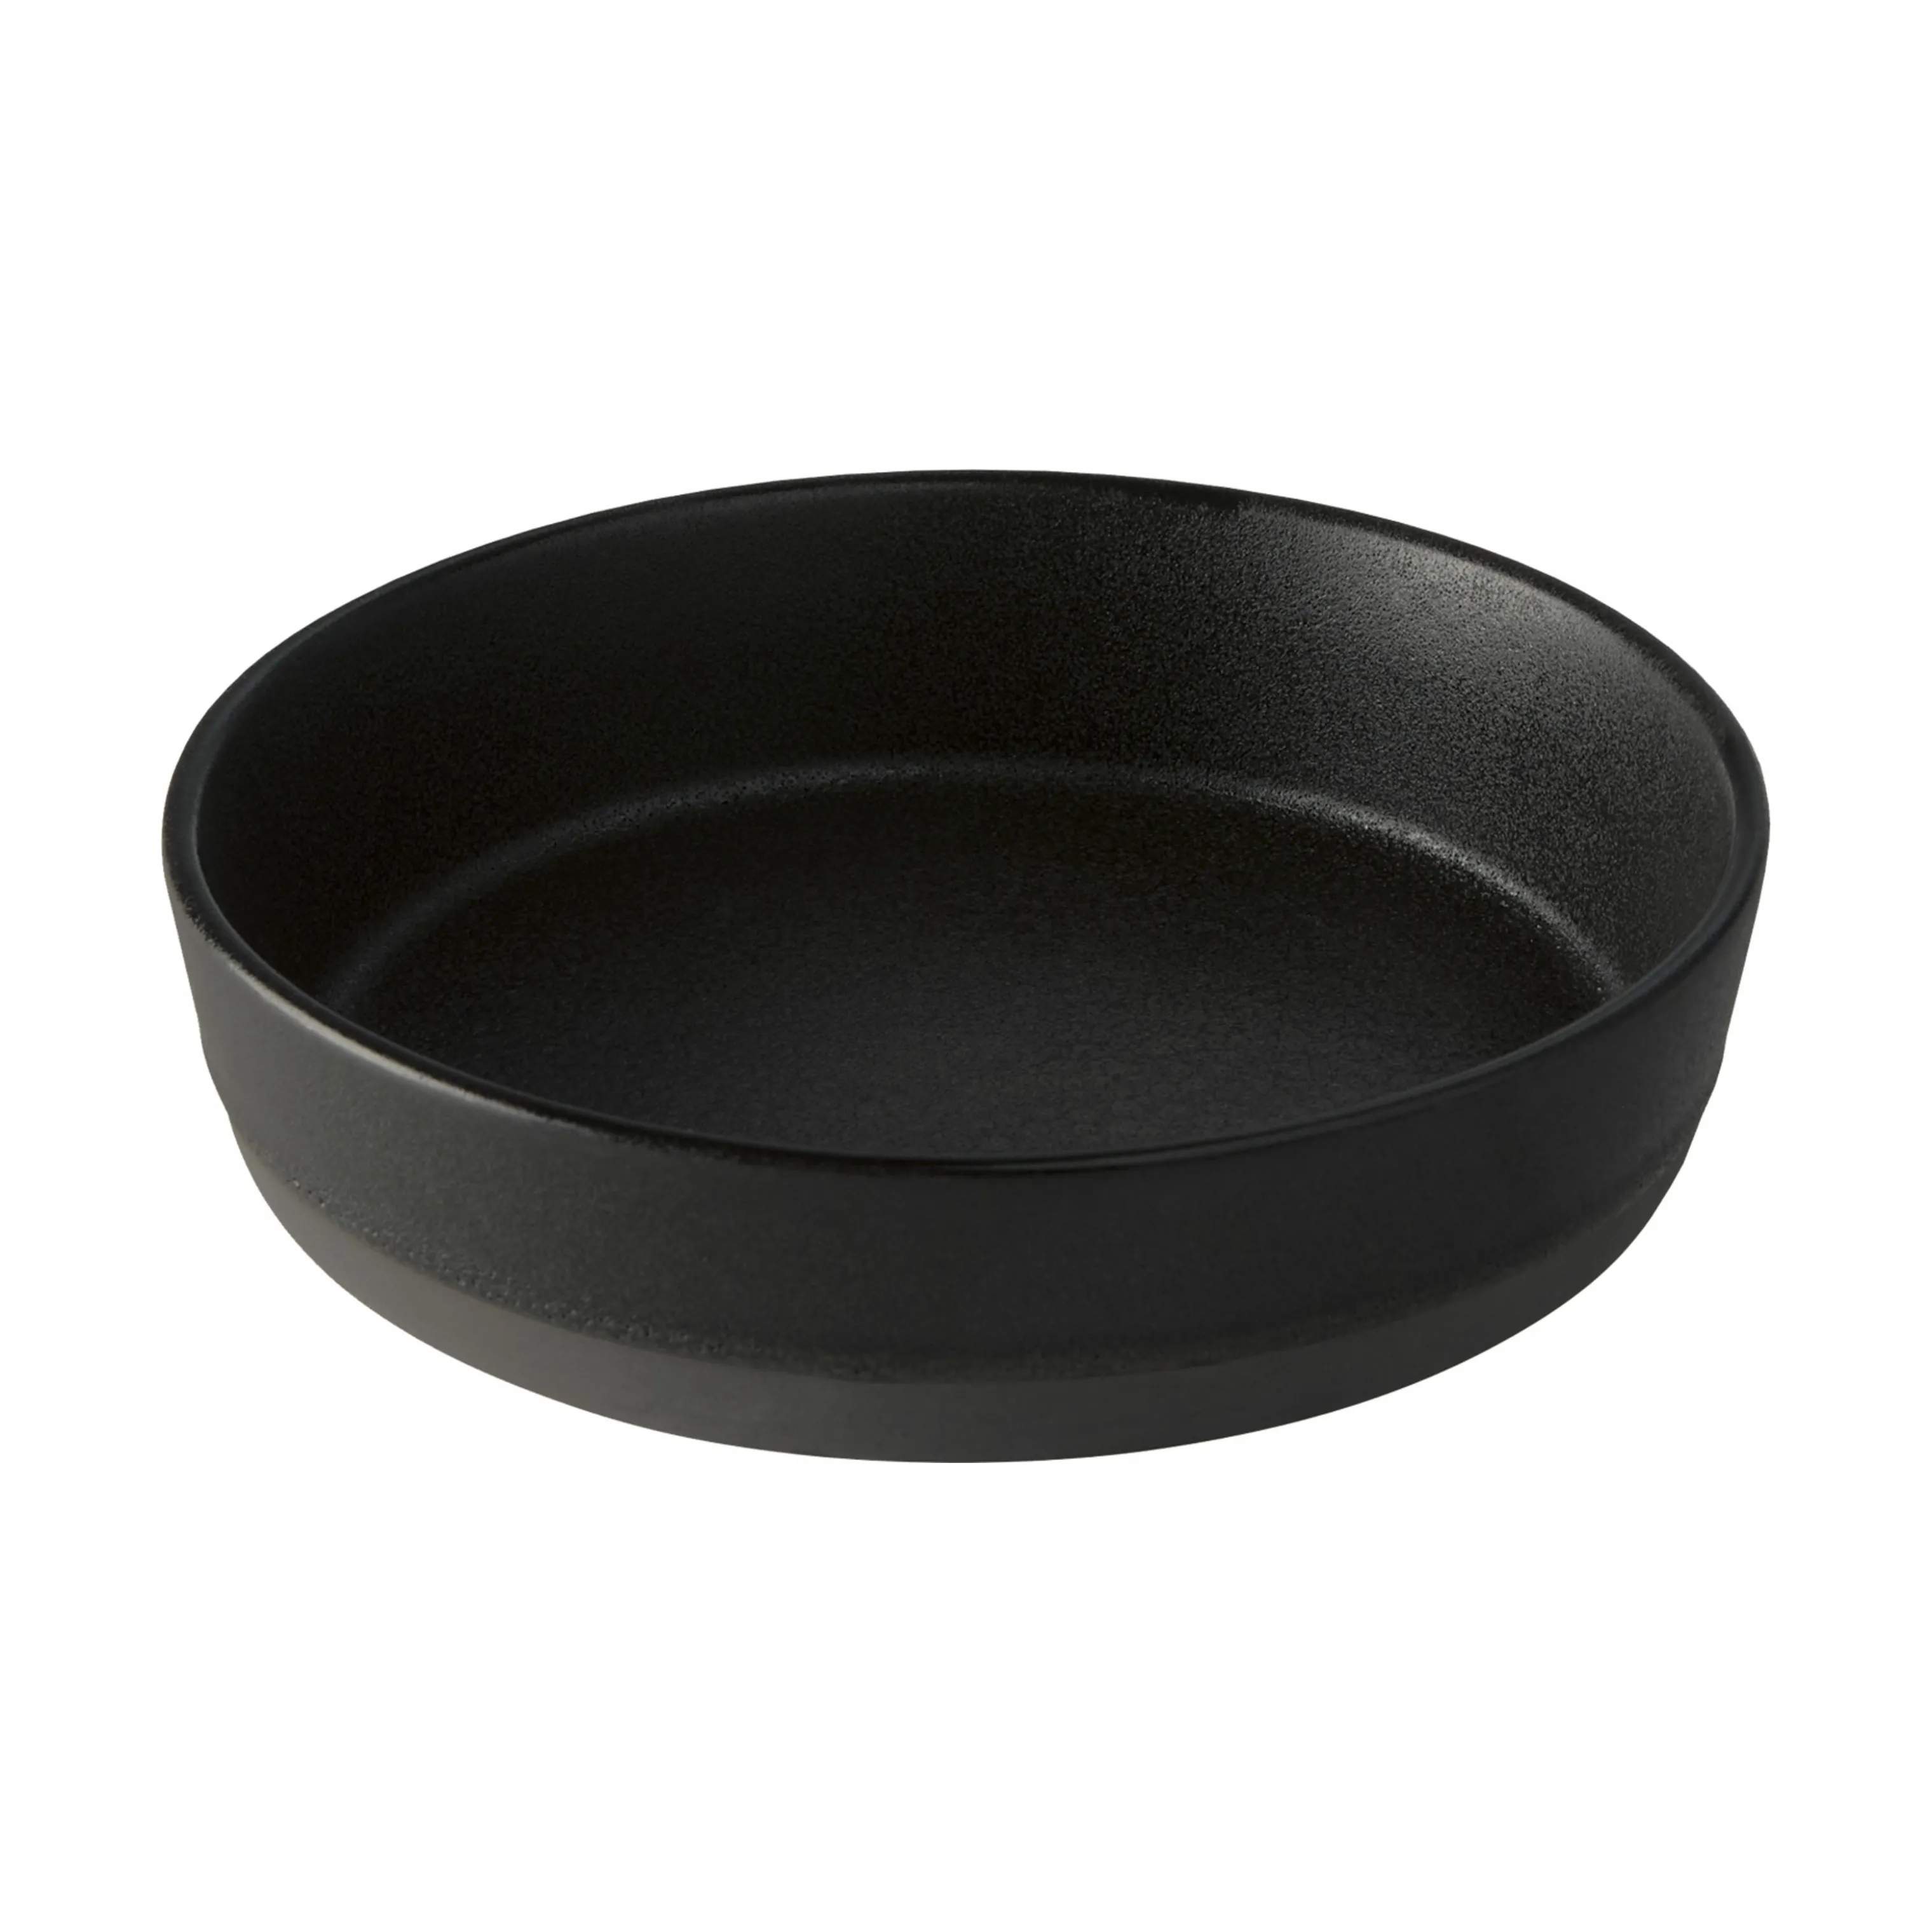 Suppeskål, titanium black, large